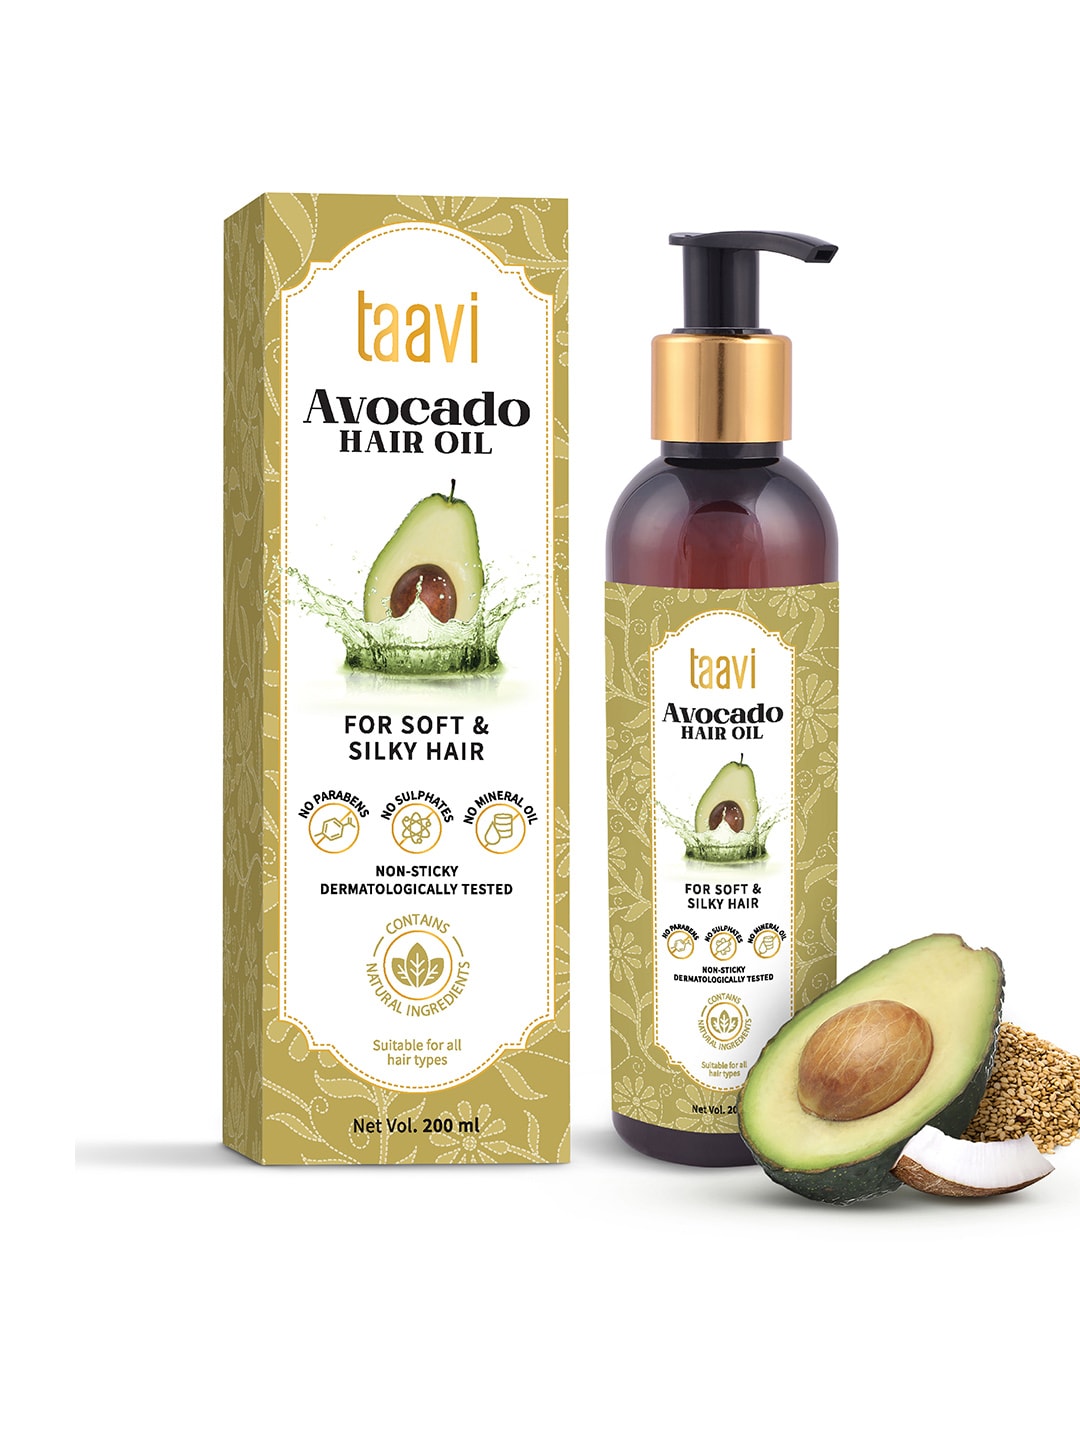 Taavi Avocado Hair Oil 200 ml Price in India